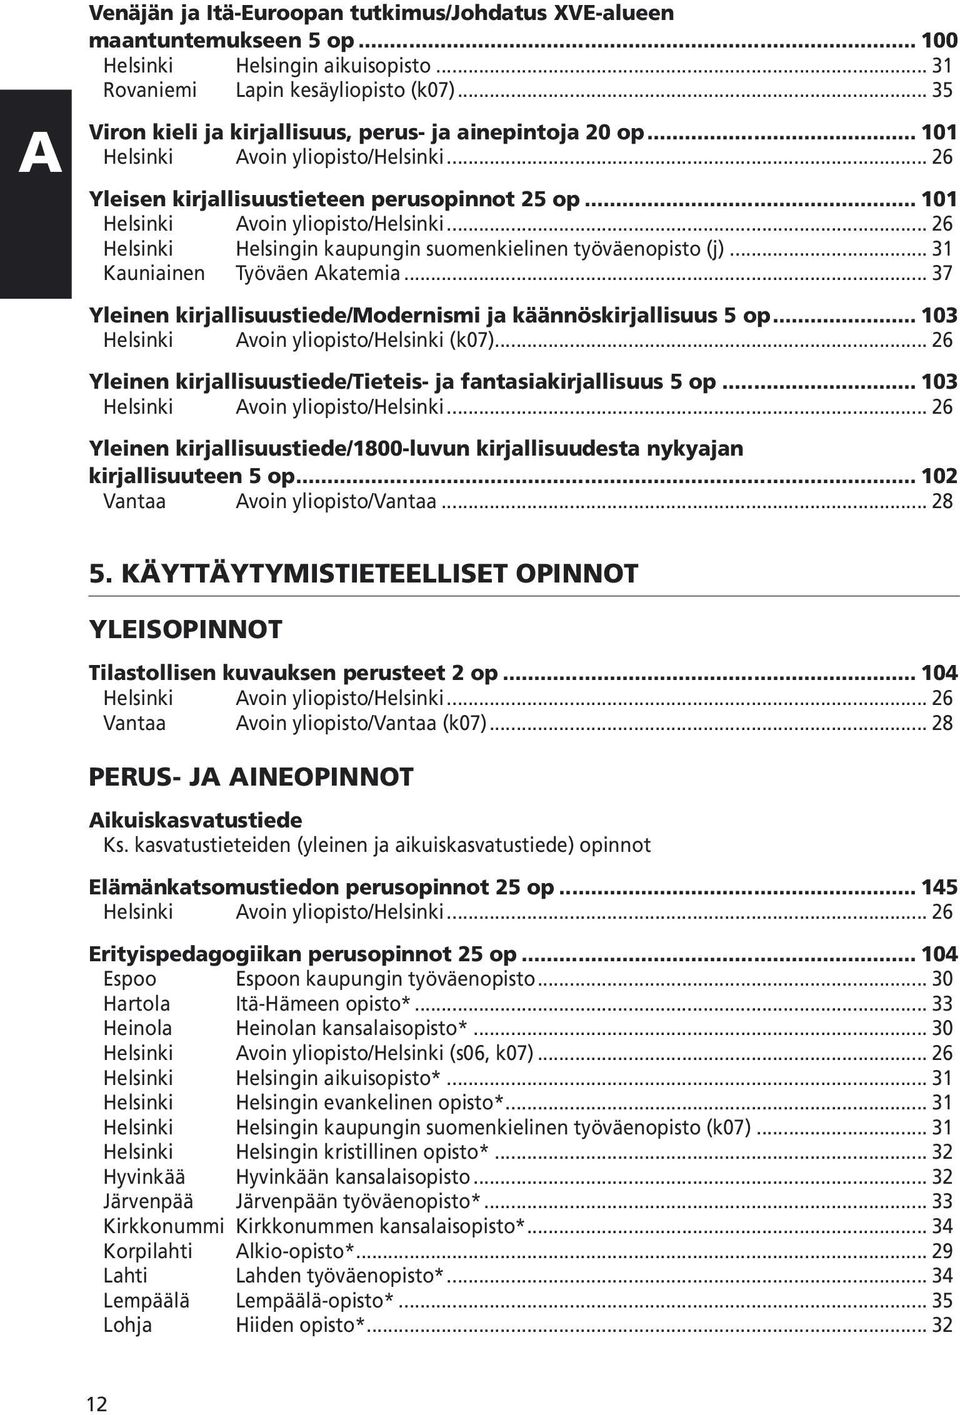 .. 31 Kauniainen Työväen Akatemia... 37 Yleinen kirjallisuustiede/modernismi ja käännöskirjallisuus 5 op... 103 Helsinki Avoin yliopisto/helsinki (k07).